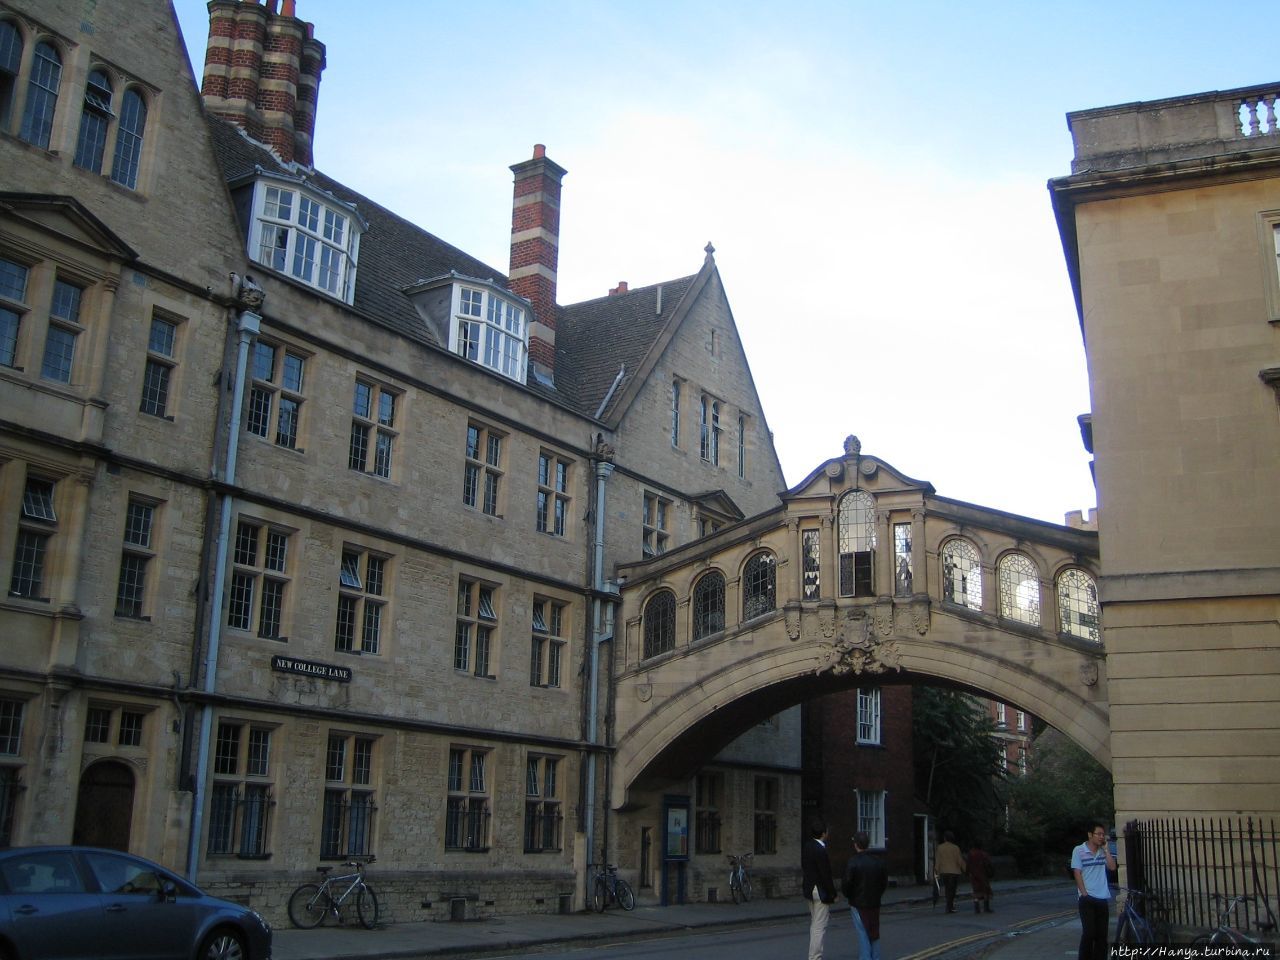 Оксфорд. Переход из здания в здание Хэртворт-колледжа по типу моста вздохов в Венеции